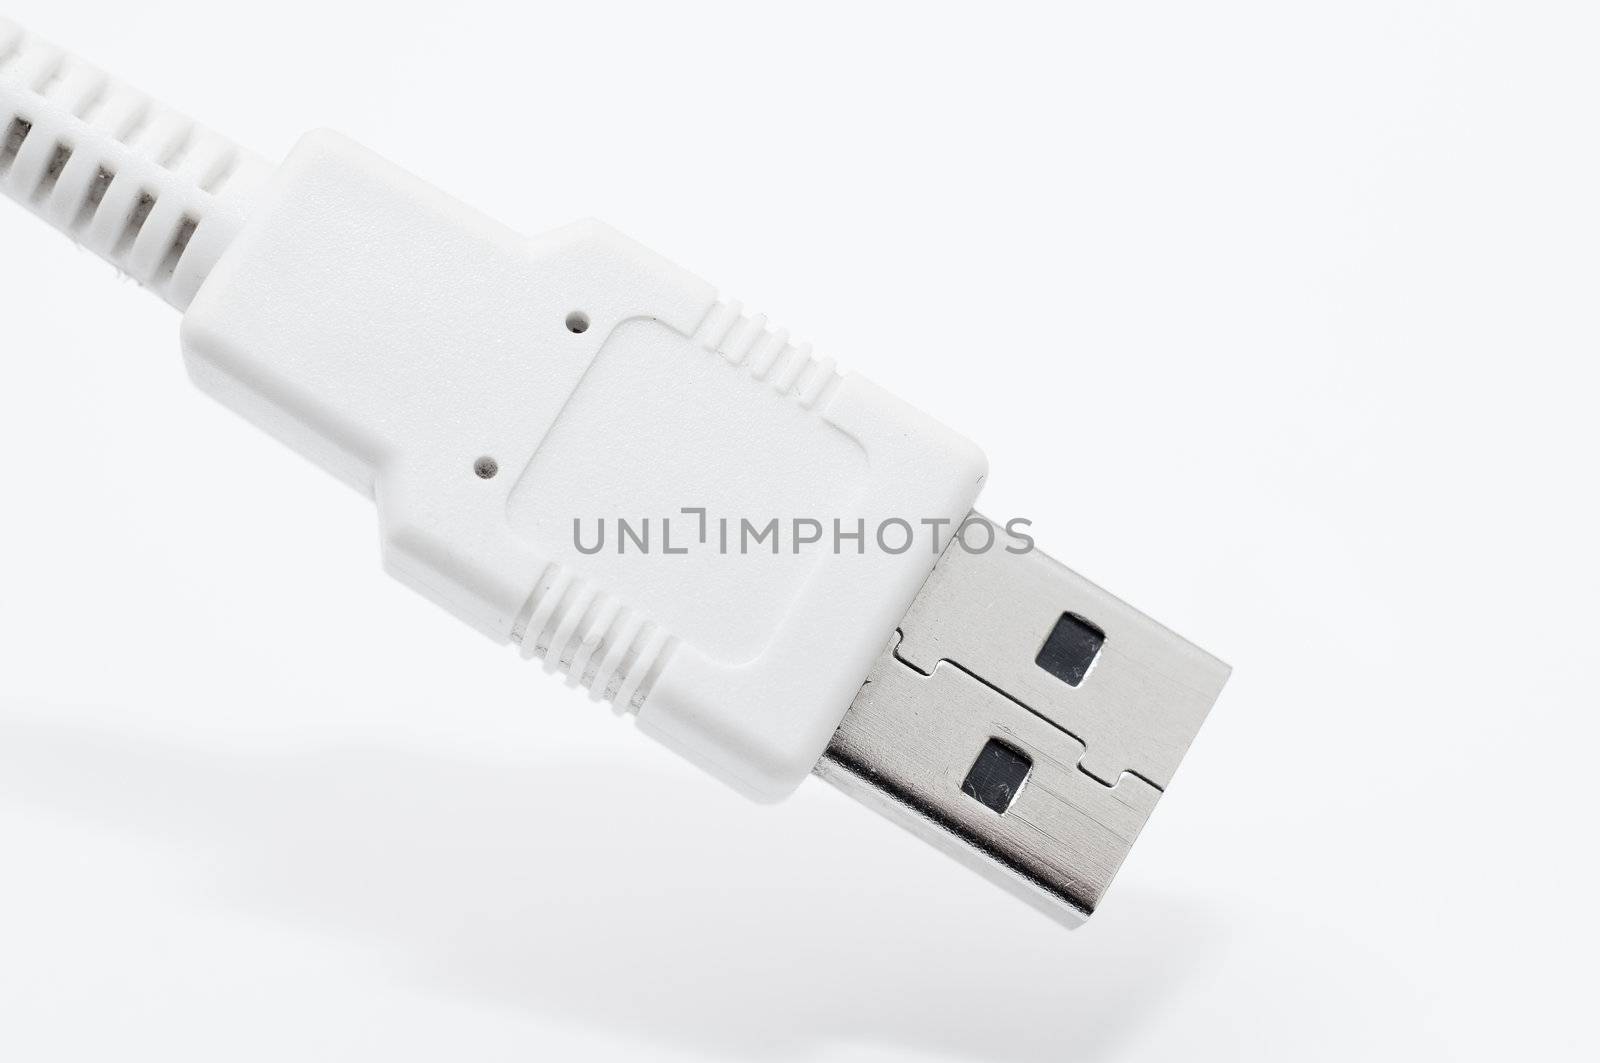 an image of usb plug